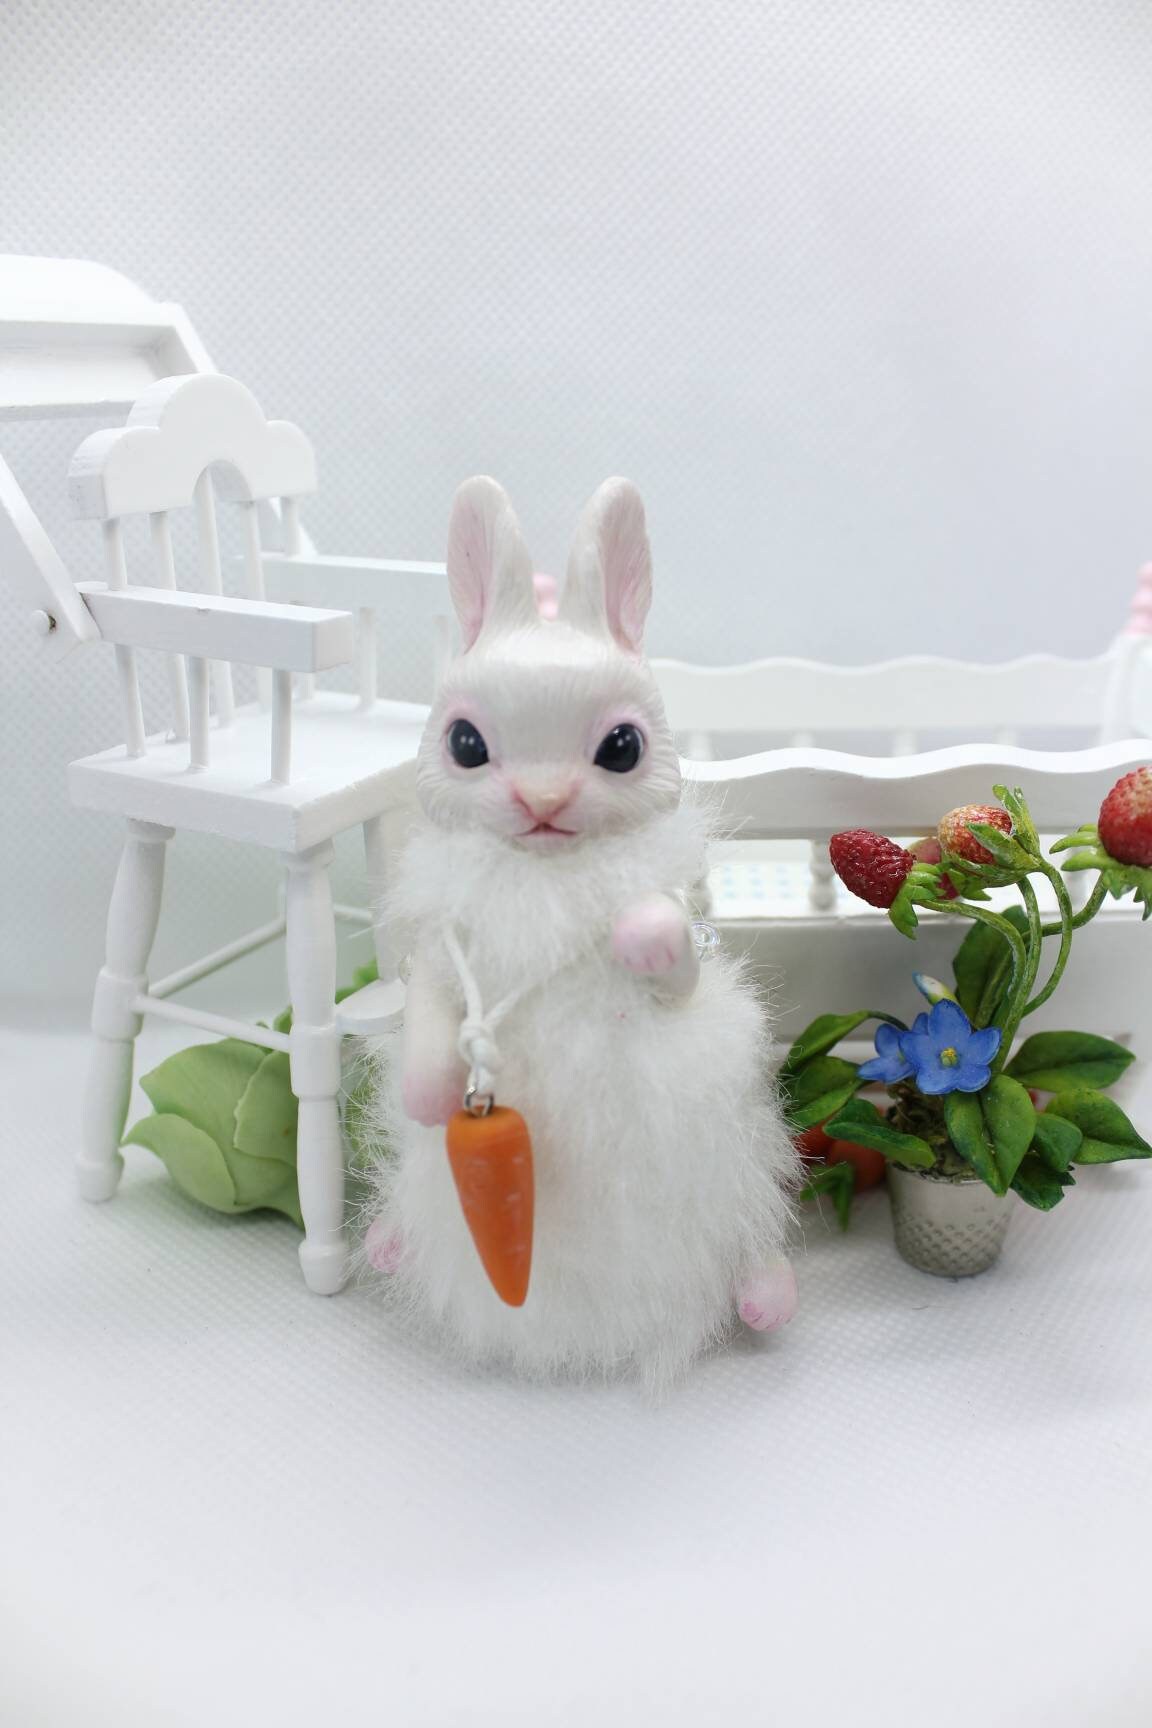 Rabbit miniature fantasy animal creature fairy art toy OOAK | Etsy